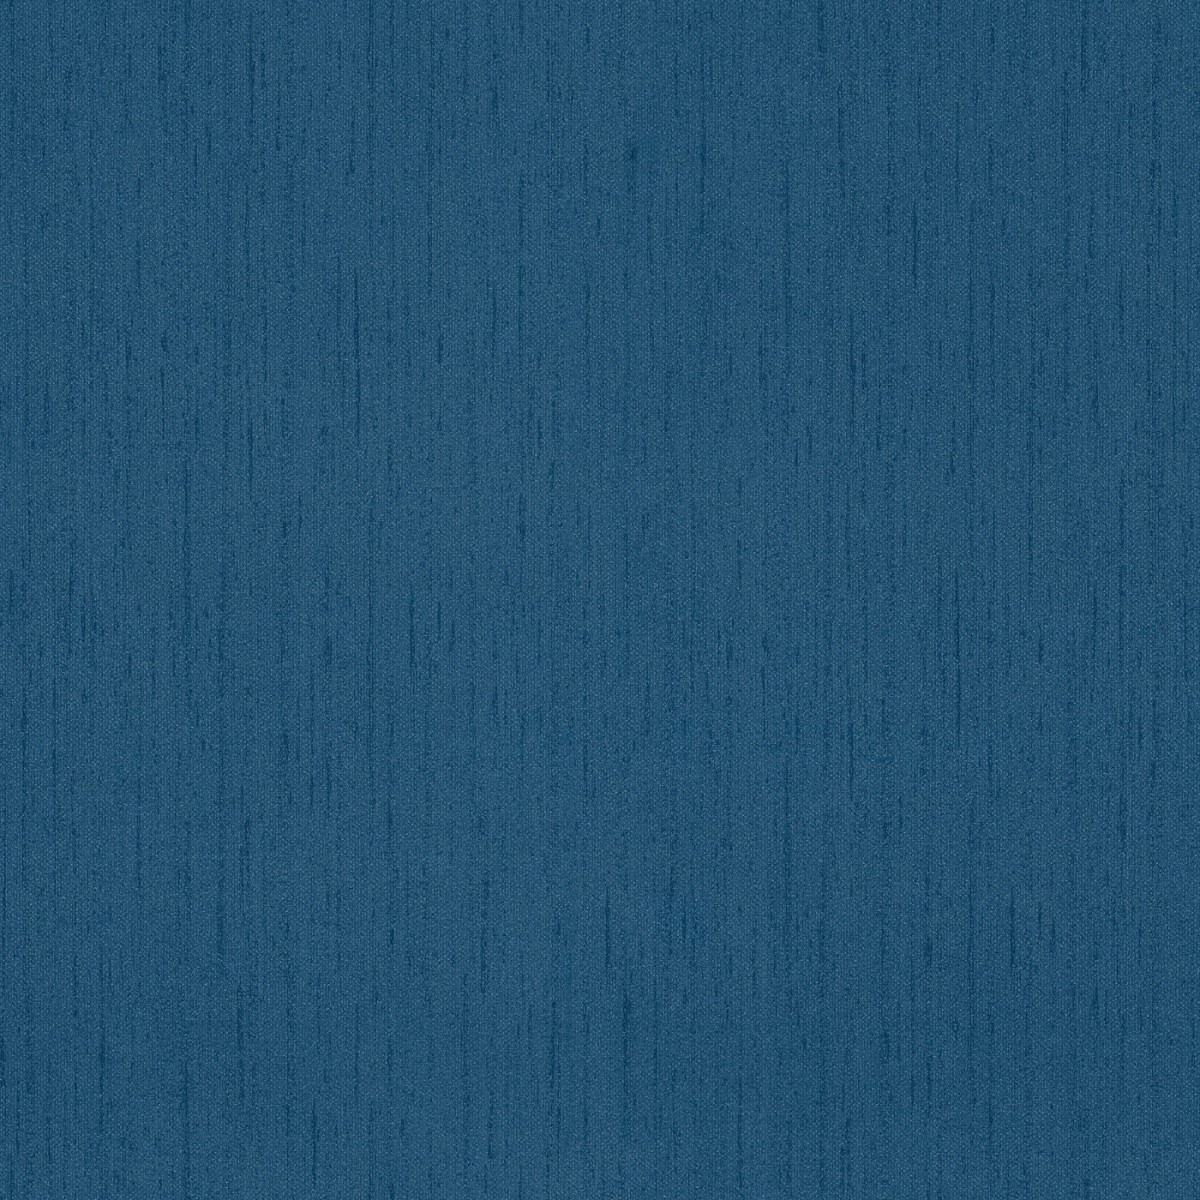 Tapet Sandberg SND-230-76. Conține culorile: Albastru, Albastru-Violet, Albastru, Albastru Porumbel